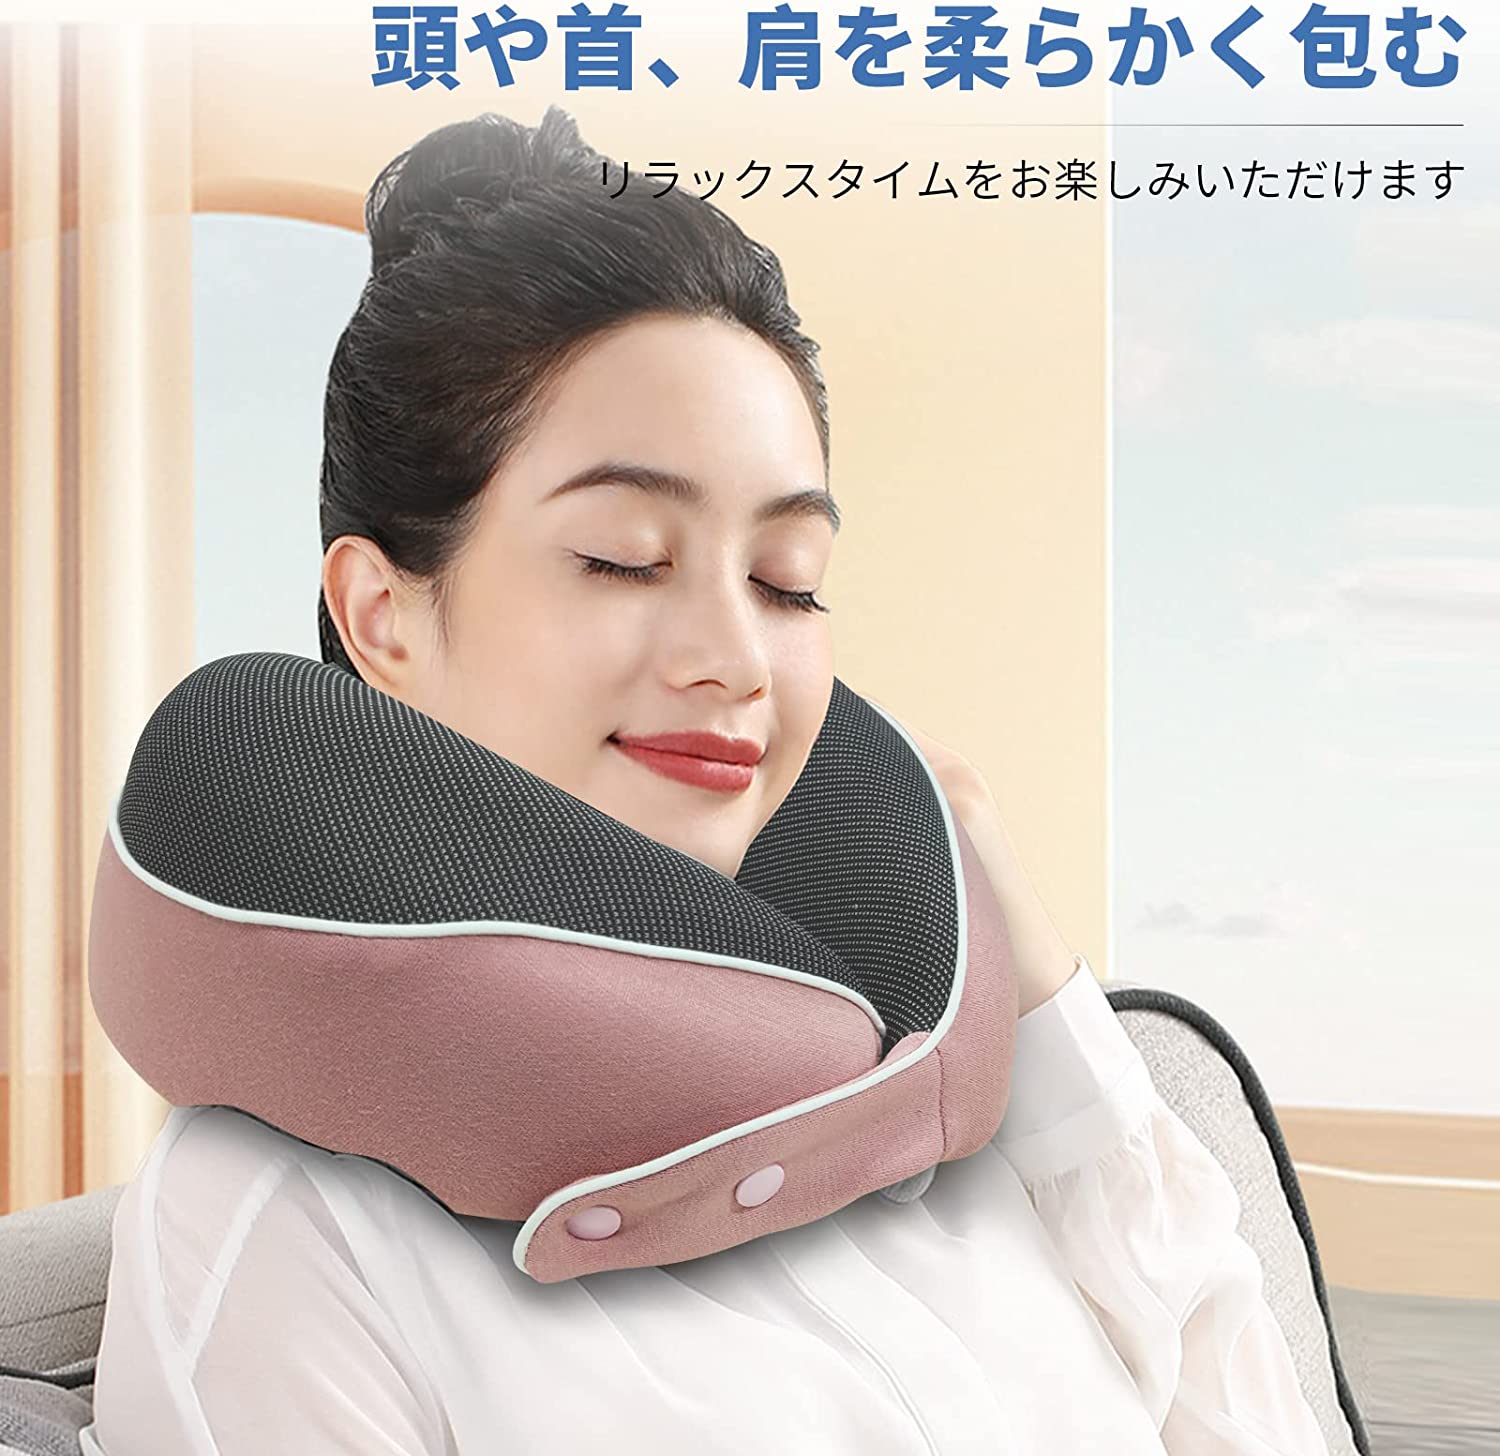 ネックピロー 携帯枕 トラベルピロー 首枕 低反発 旅行枕 コンパクト